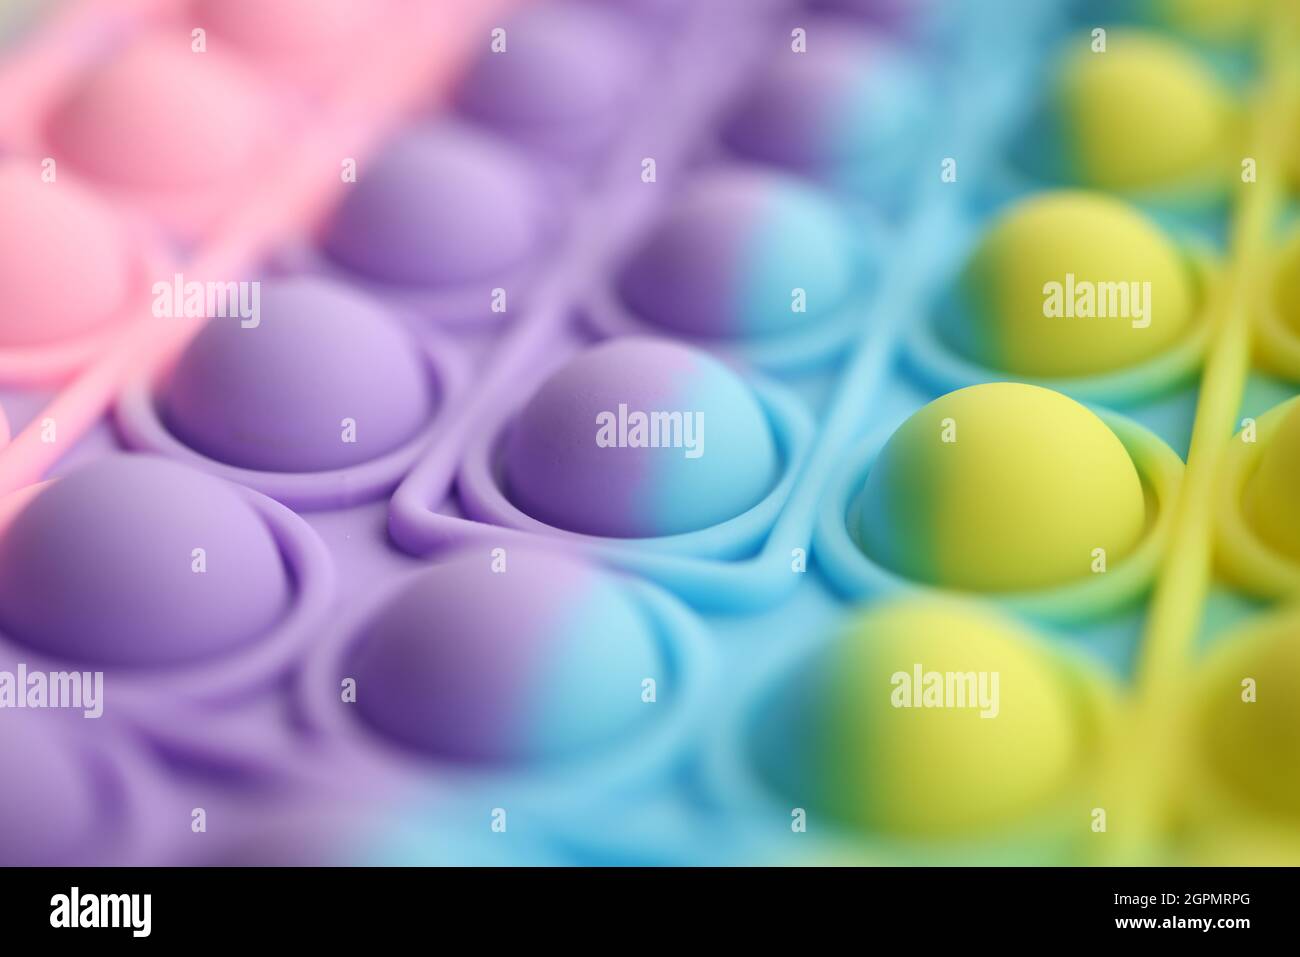 La pellicola multicolore a bolle d'aria lo schiocca in colori brillanti sul tavolo Foto Stock